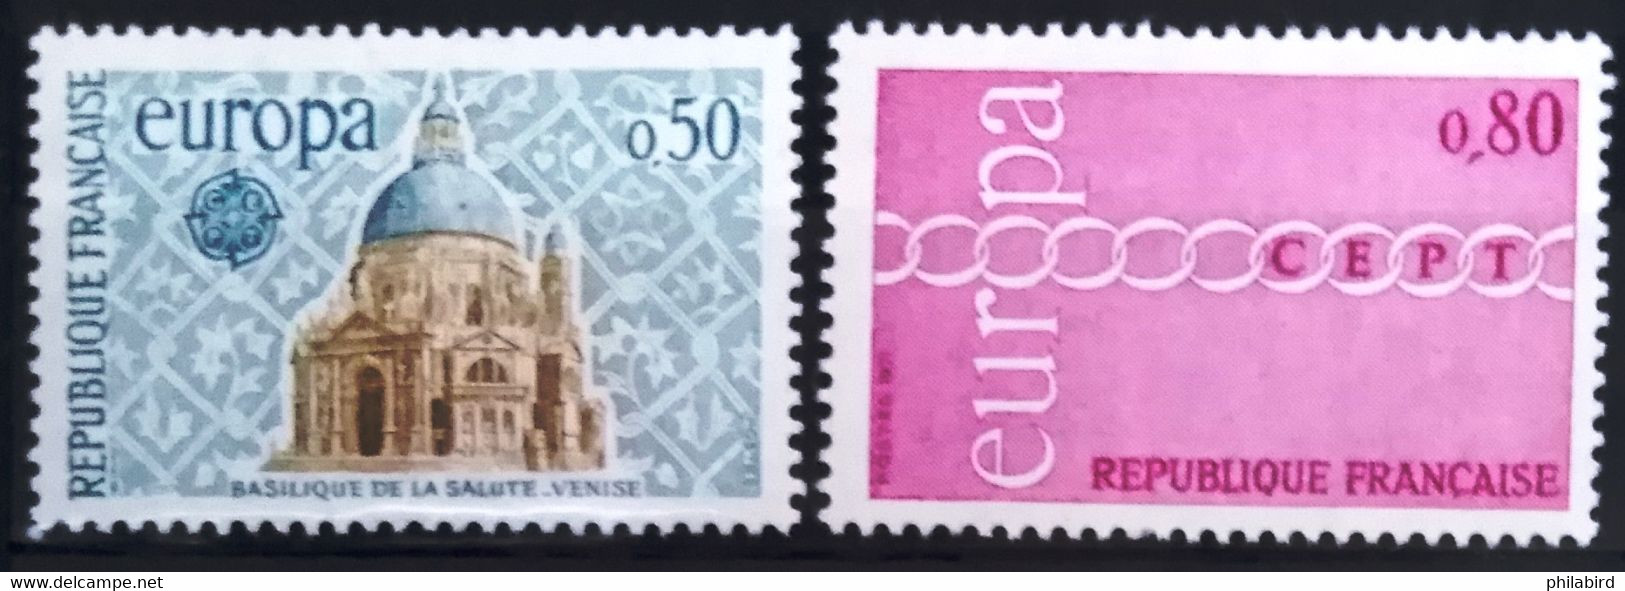 EUROPA 1971 - FRANCE                    N° 1676/1677                       NEUF** - 1971